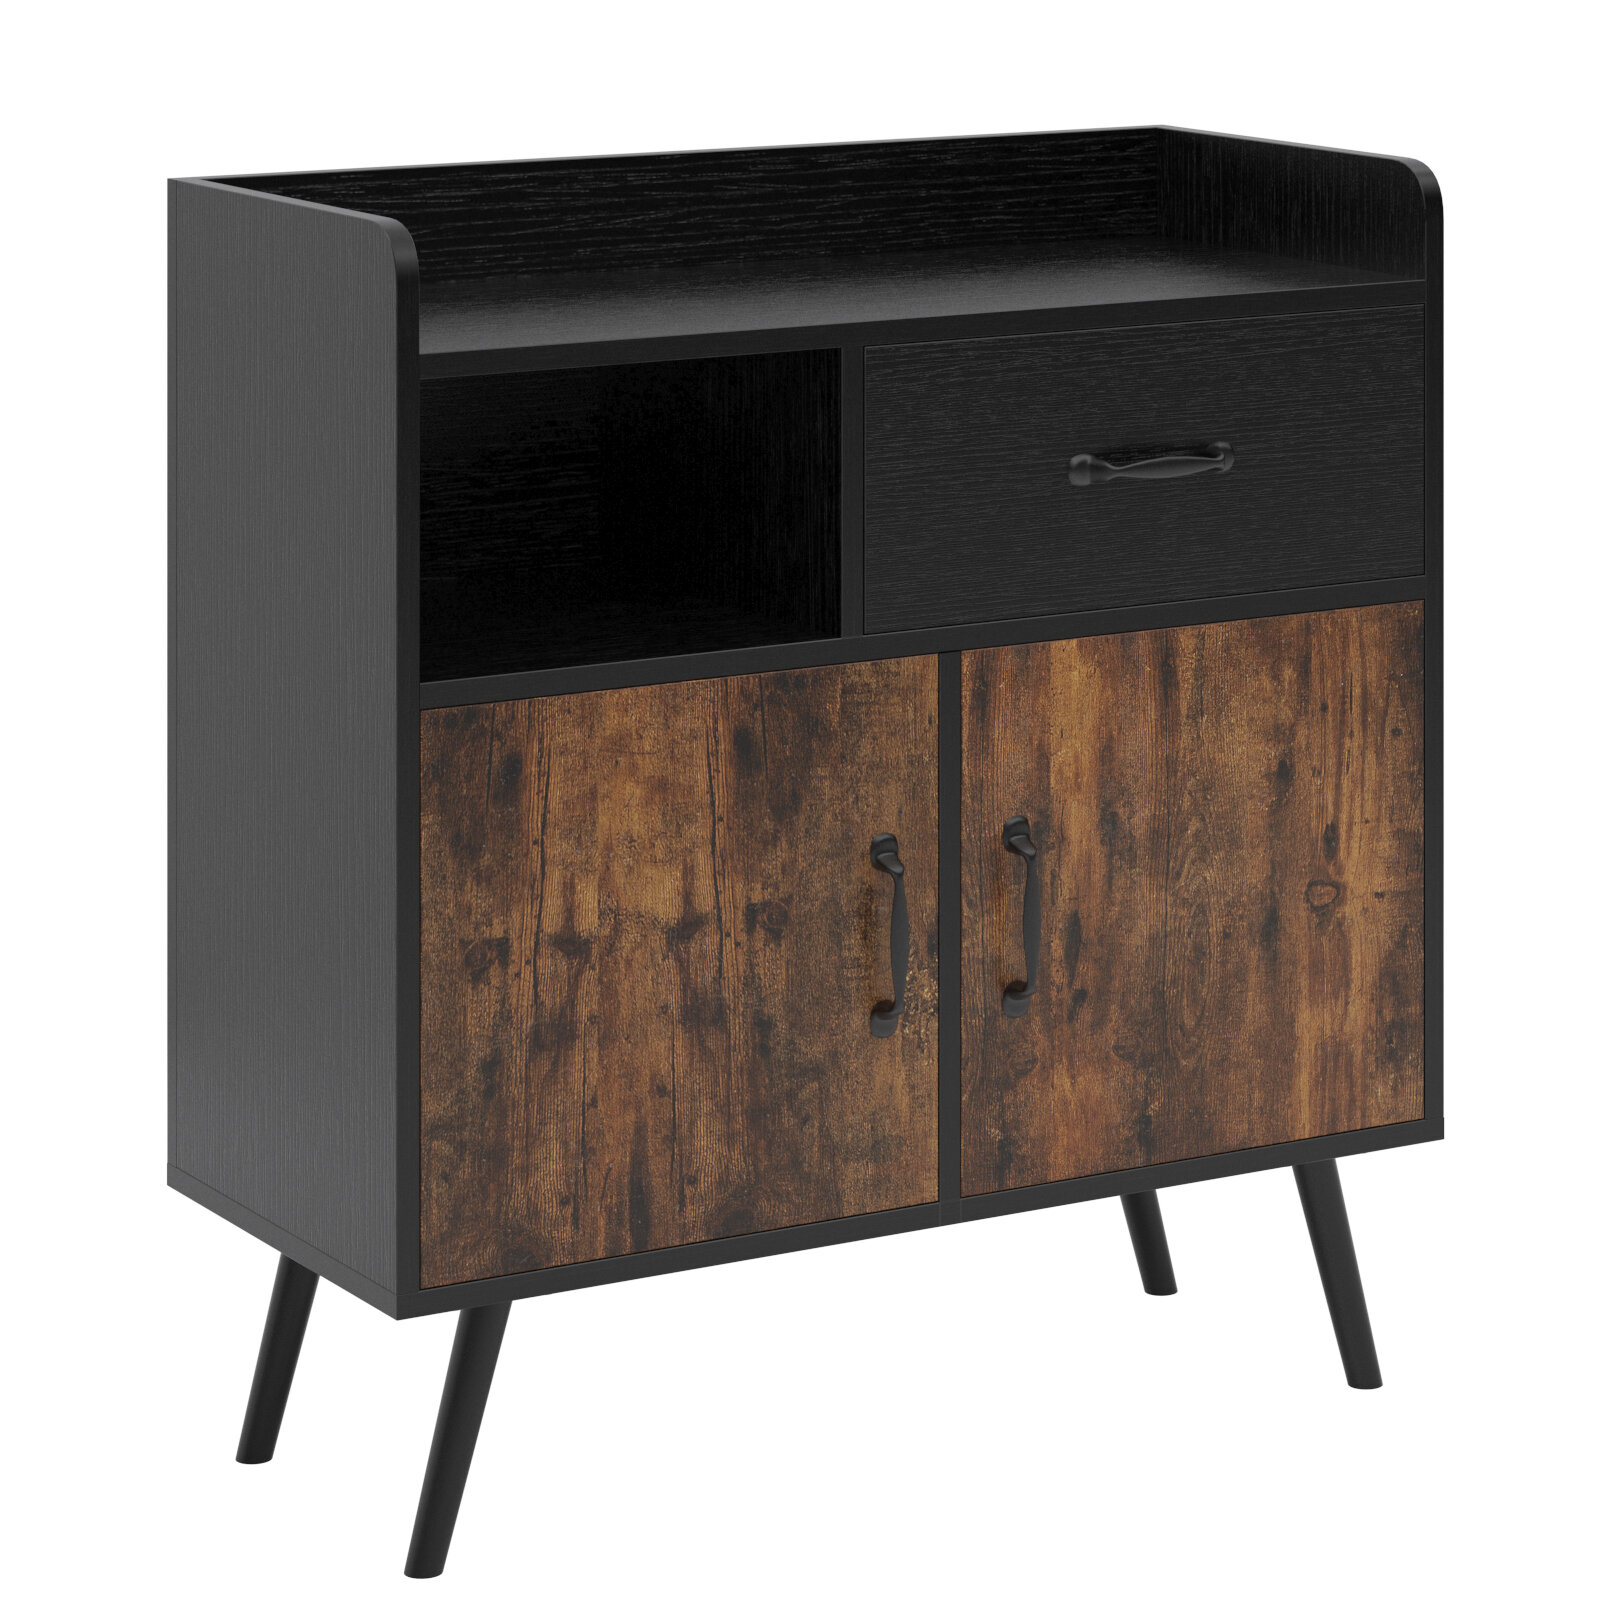 https://assets.wfcdn.com/im/42065984/compr-r85/1872/187219291/314-storage-cabinet-wood-rack-organizer-storage-cabinet-solid-wood-entrance-modern-side-cabinet-living-room-furniture-retro-storage-cabinet.jpg